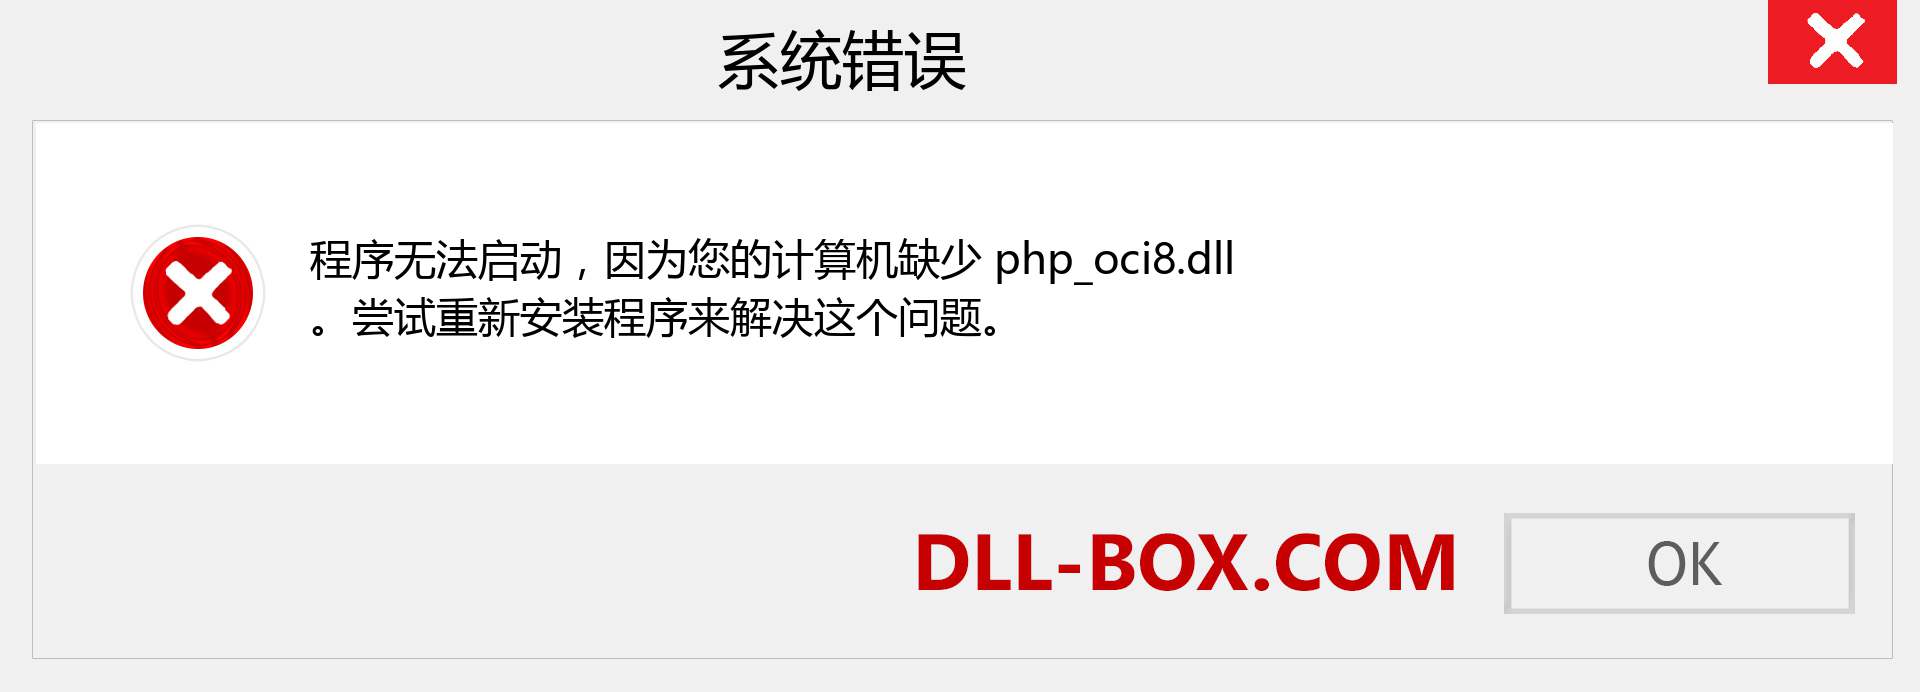 php_oci8.dll 文件丢失？。 适用于 Windows 7、8、10 的下载 - 修复 Windows、照片、图像上的 php_oci8 dll 丢失错误